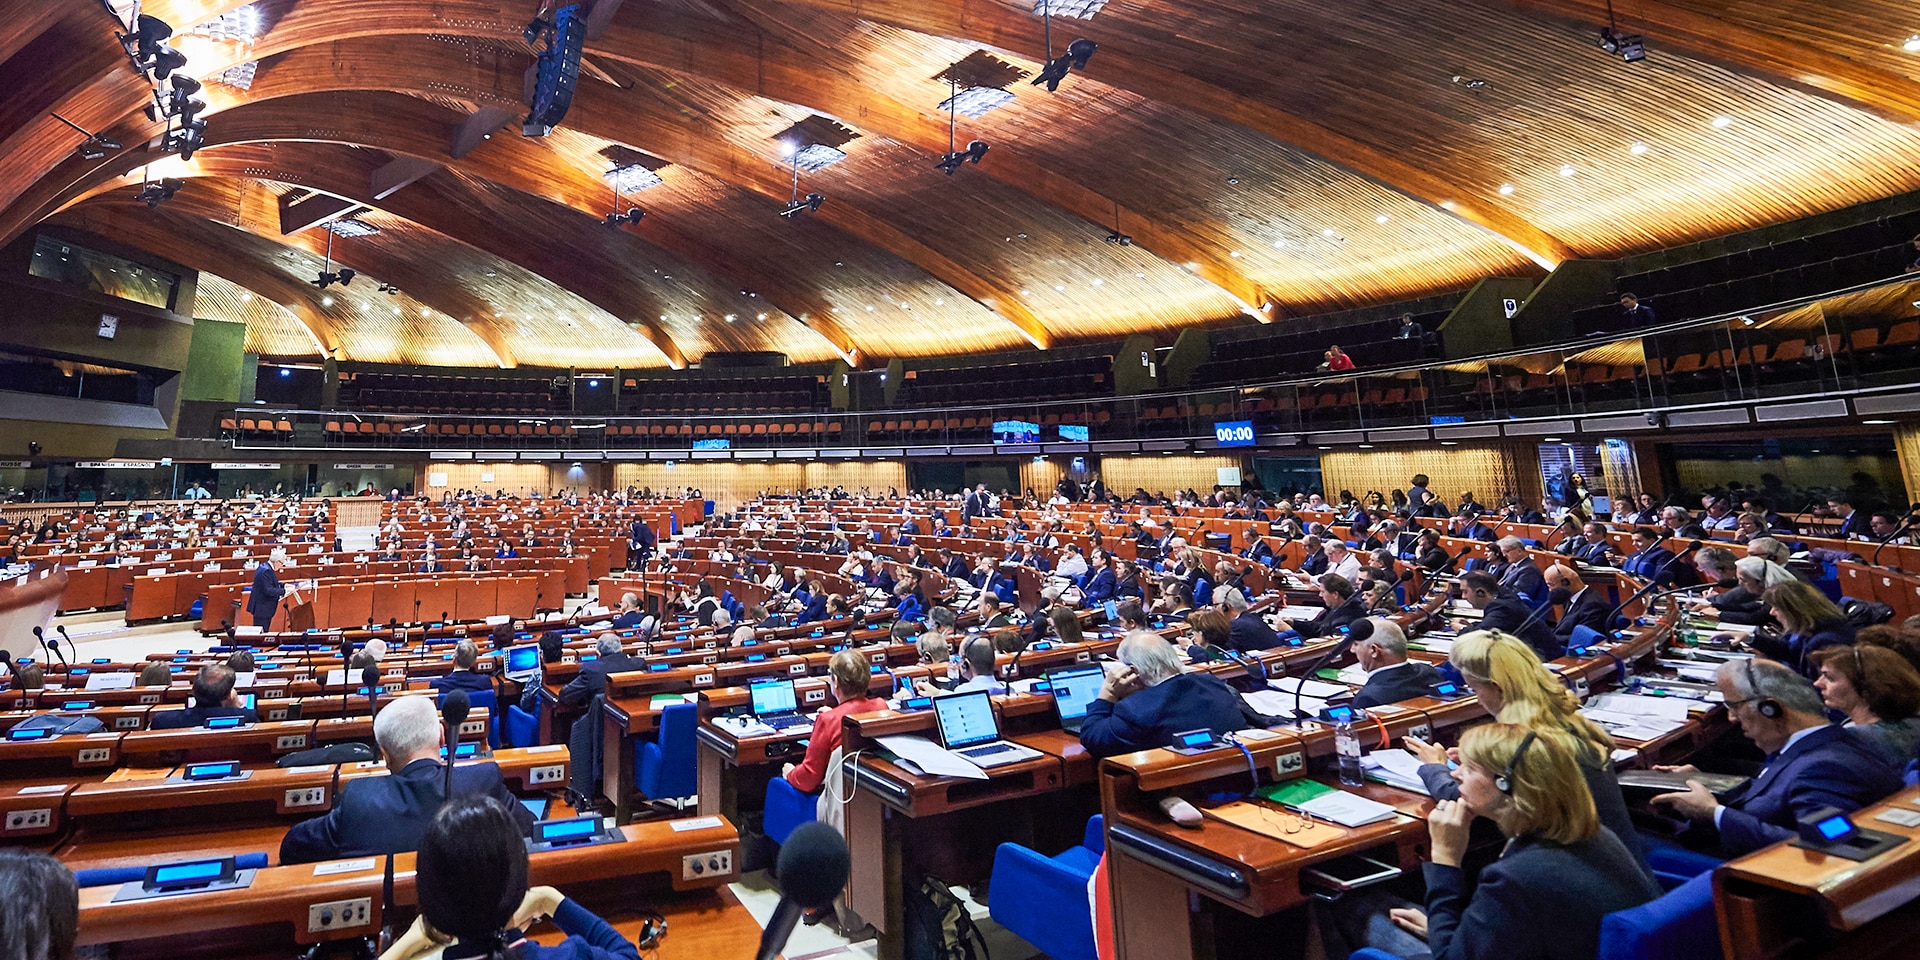 Ein grosser Saal mit einer Dachkonstruktion aus Holz und Sitzreihen im Halbkreis, in denen die Mitglieder der Parlamentarischen Versammlung des Europarats sitzen.